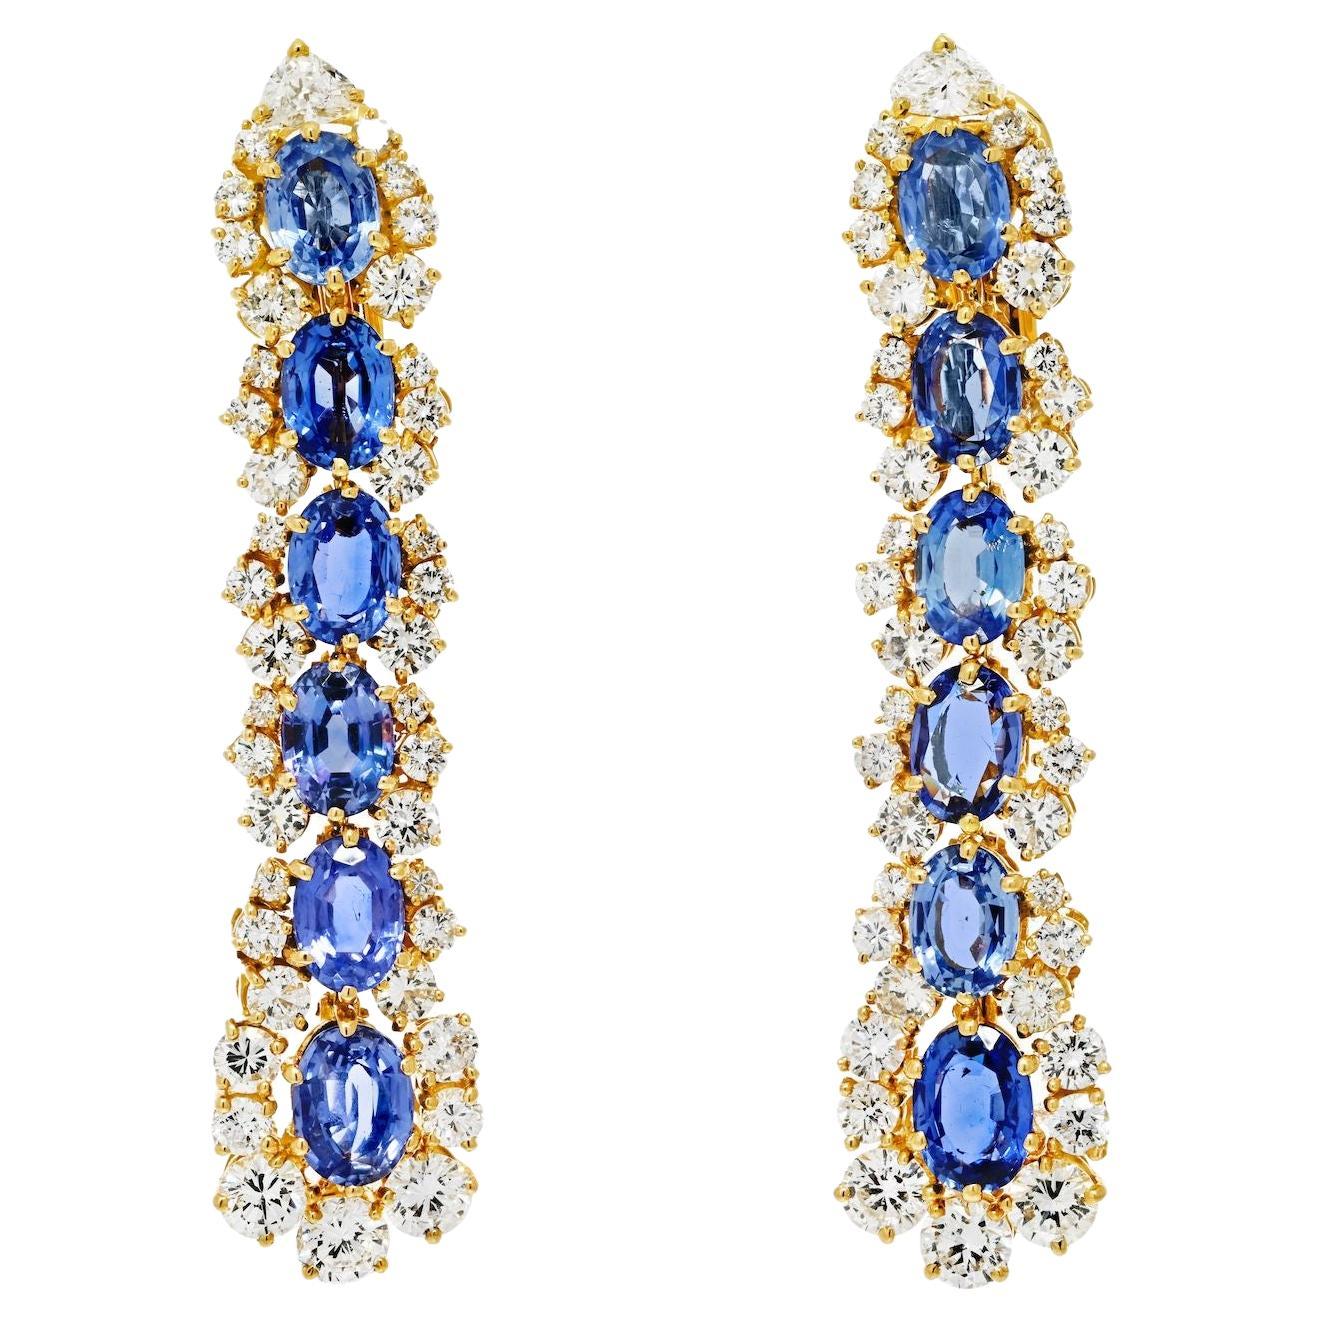 Marina B. Pendants d'oreilles en or jaune 18 carats avec diamants et saphirs